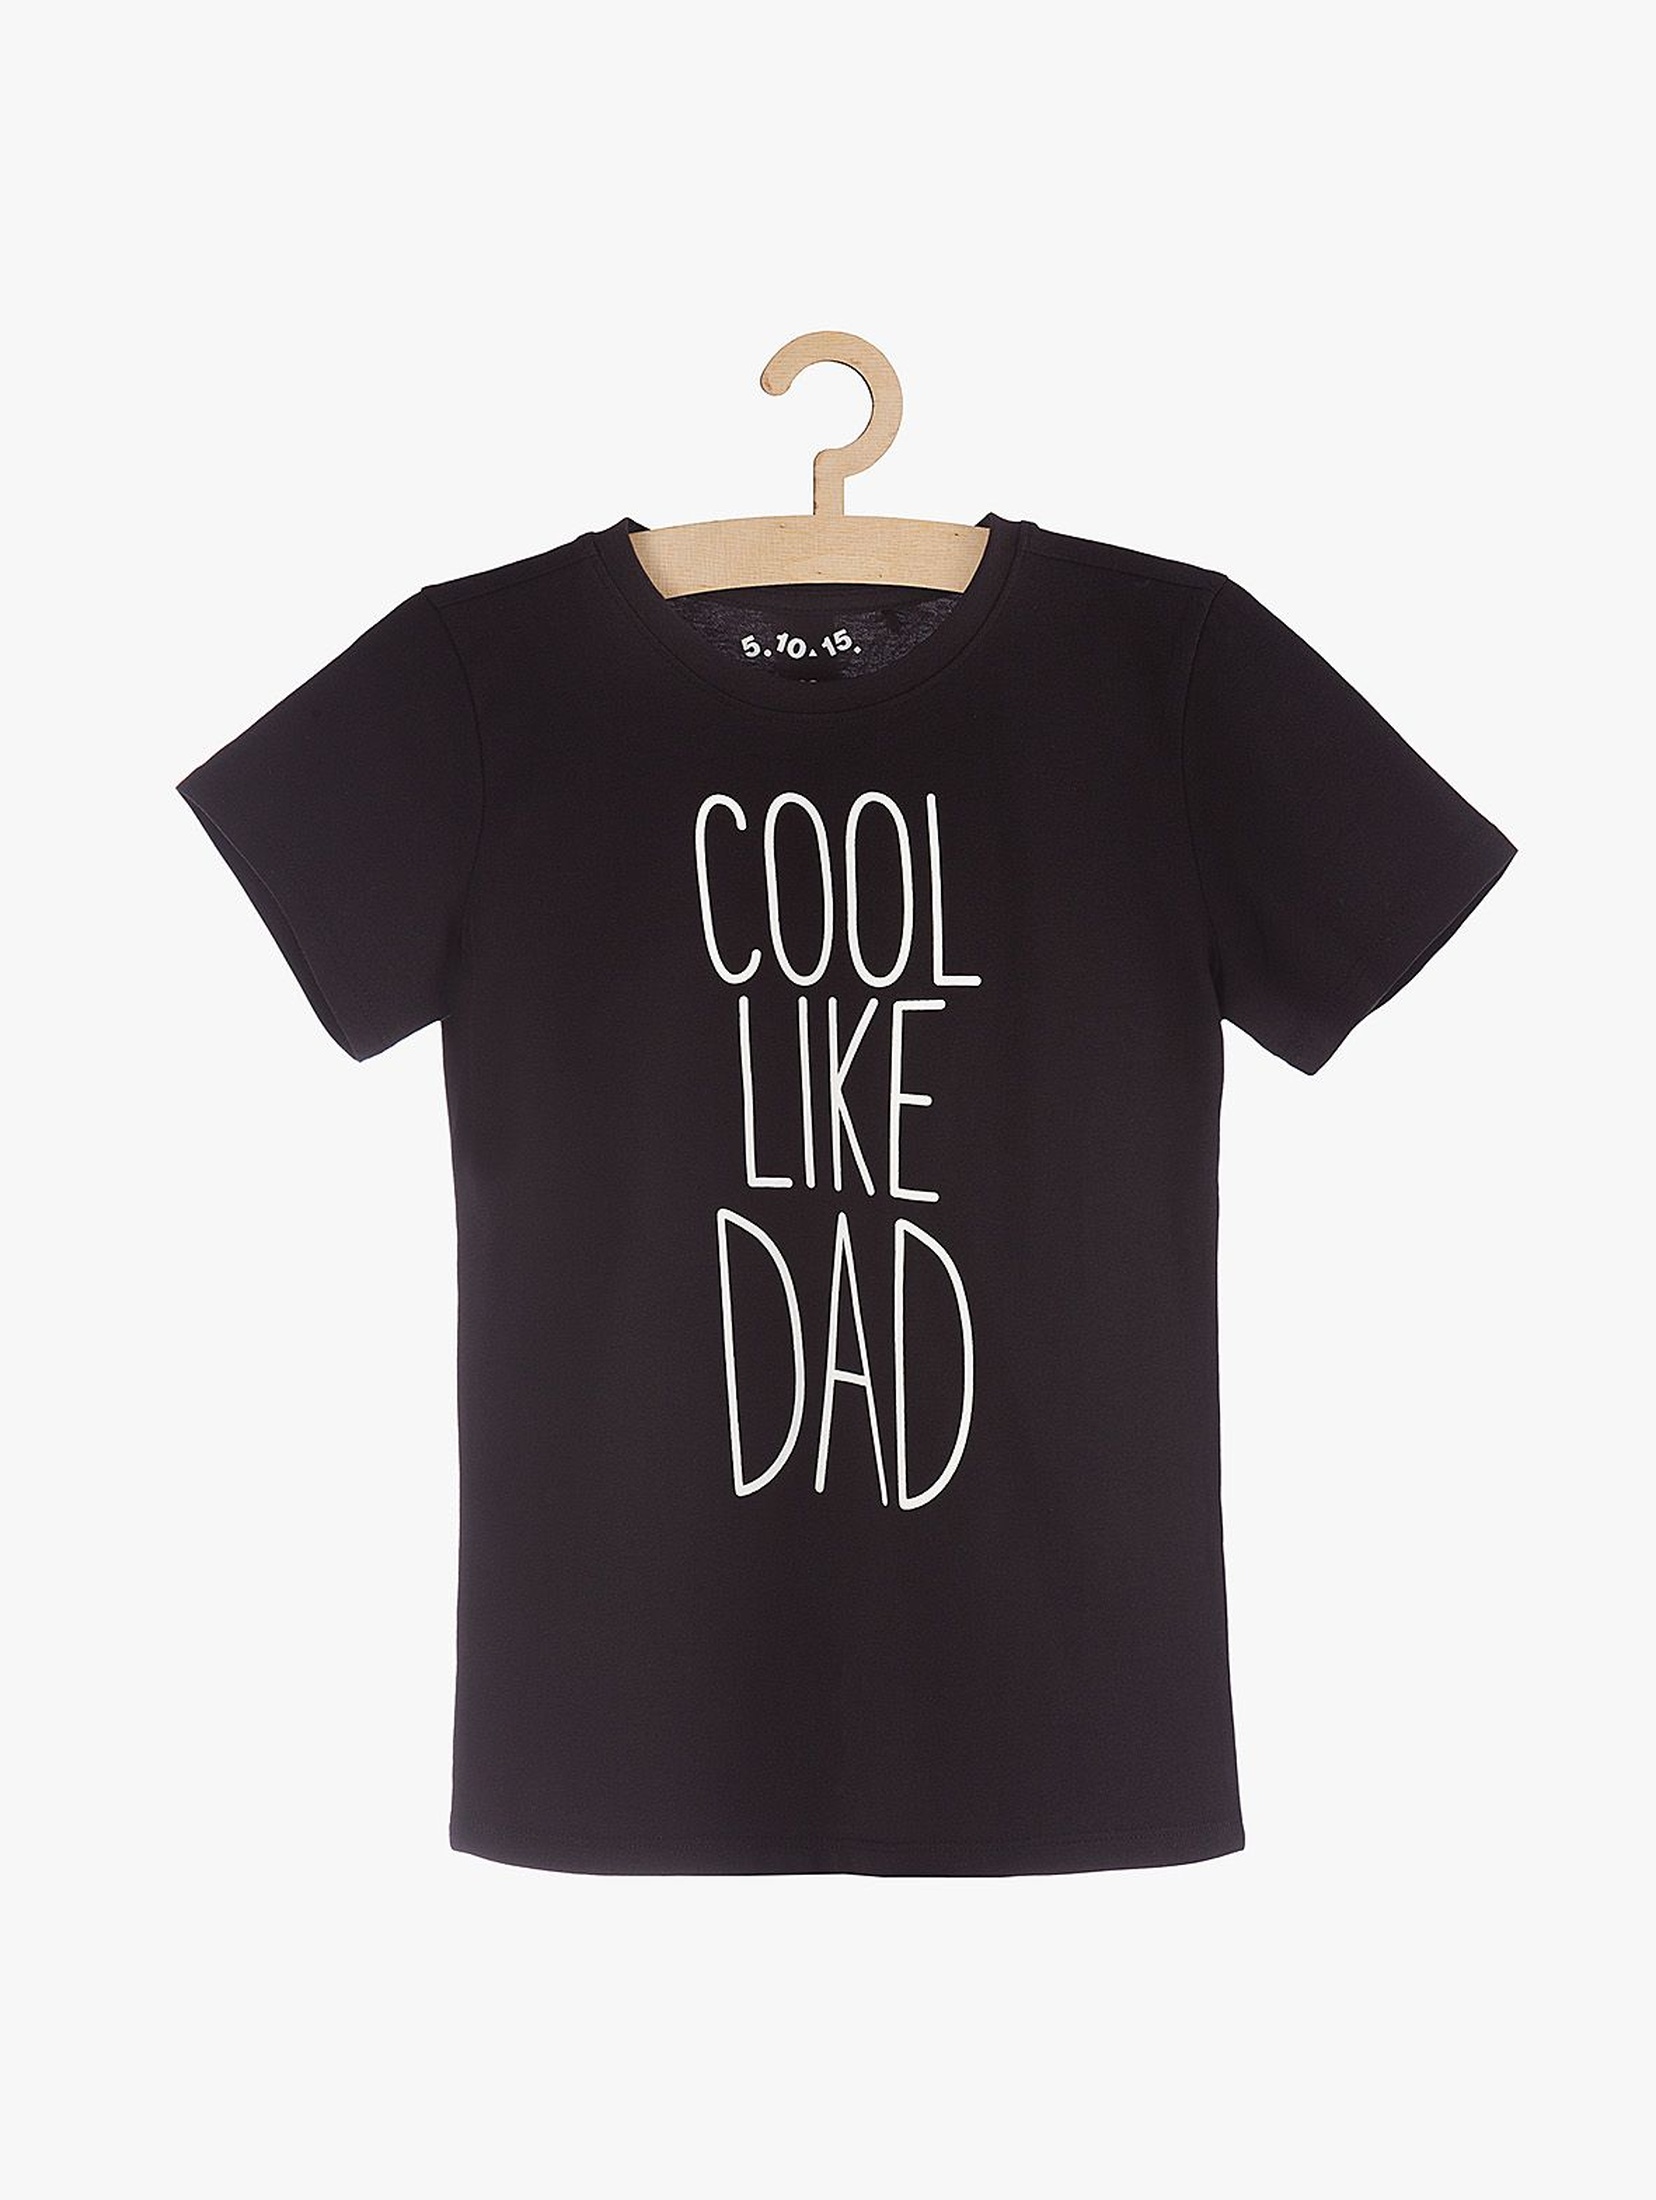 T-shirt chłopięcy czarny z napisem "Cool like Dad"